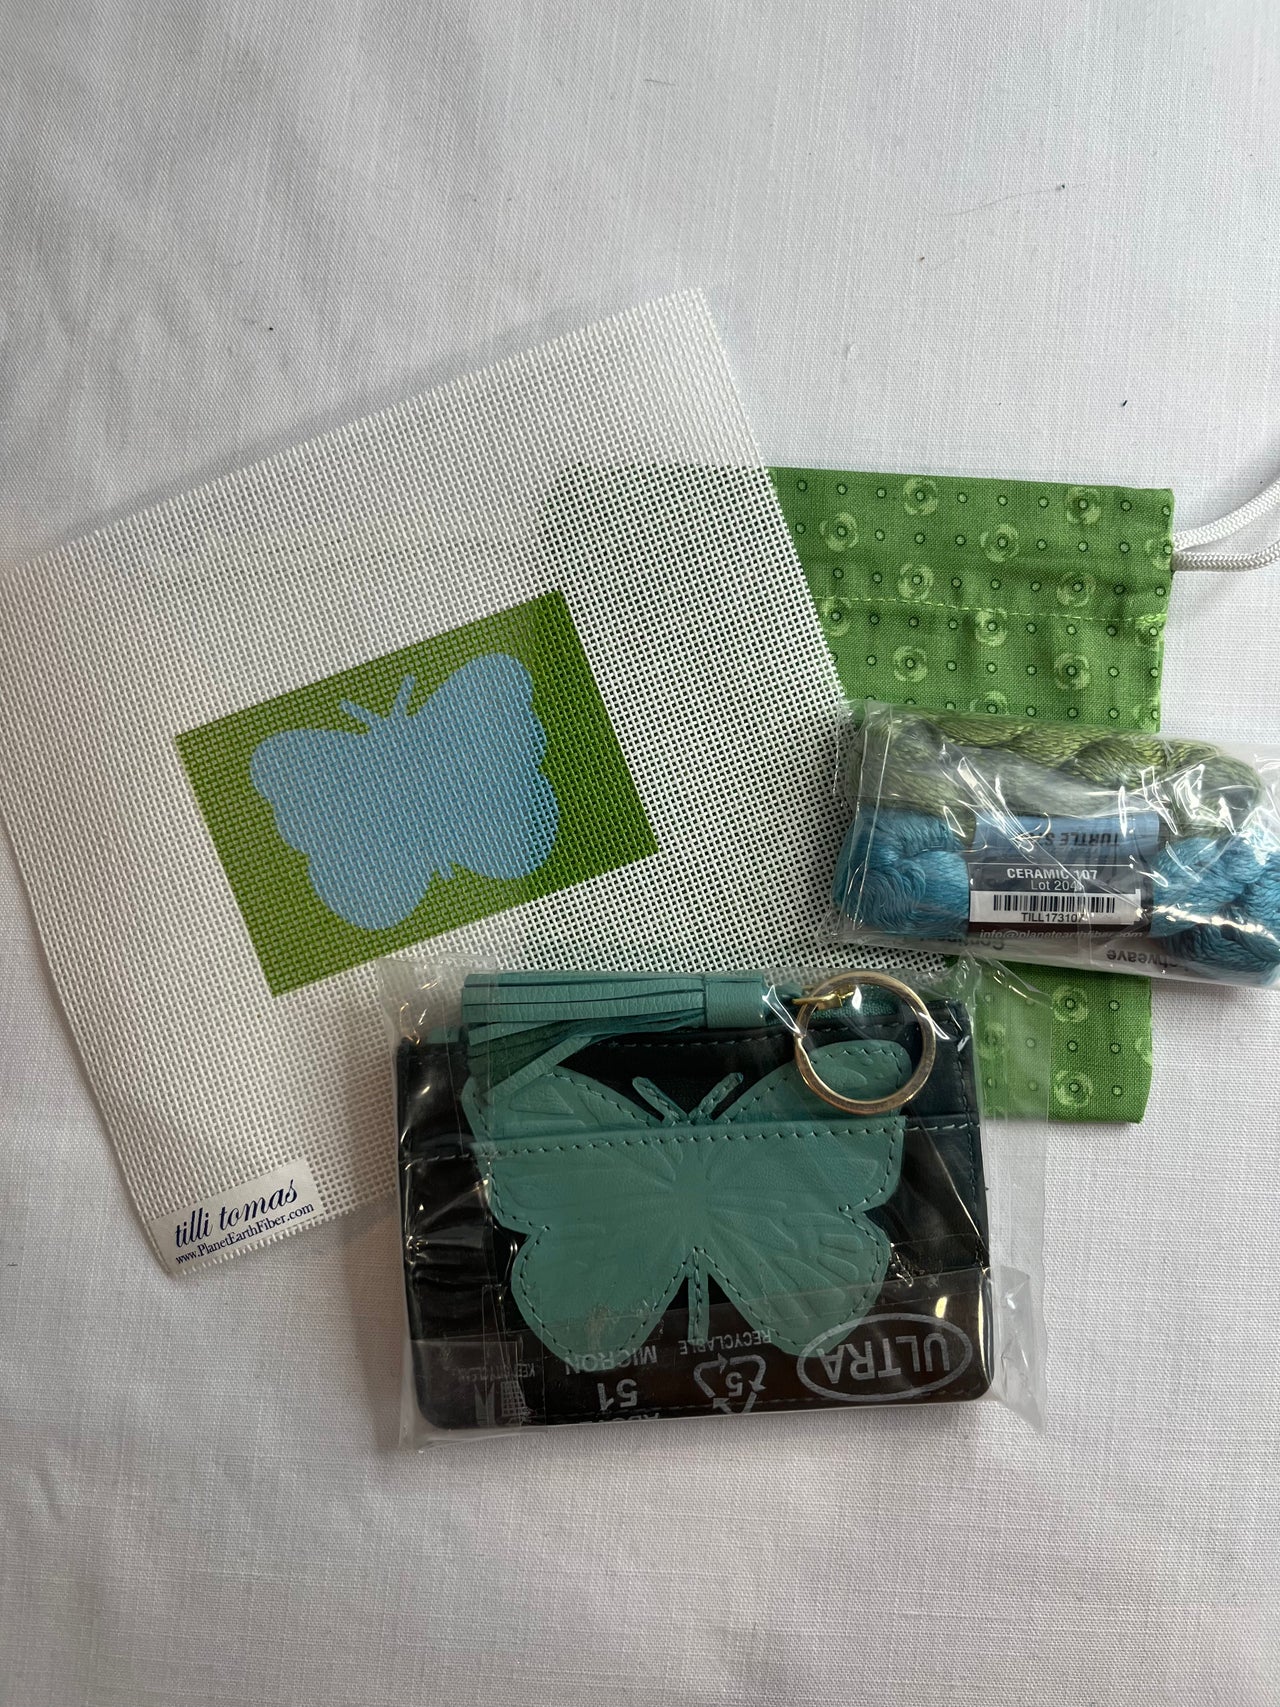 Butterfly Wallet - self-finishing Kit